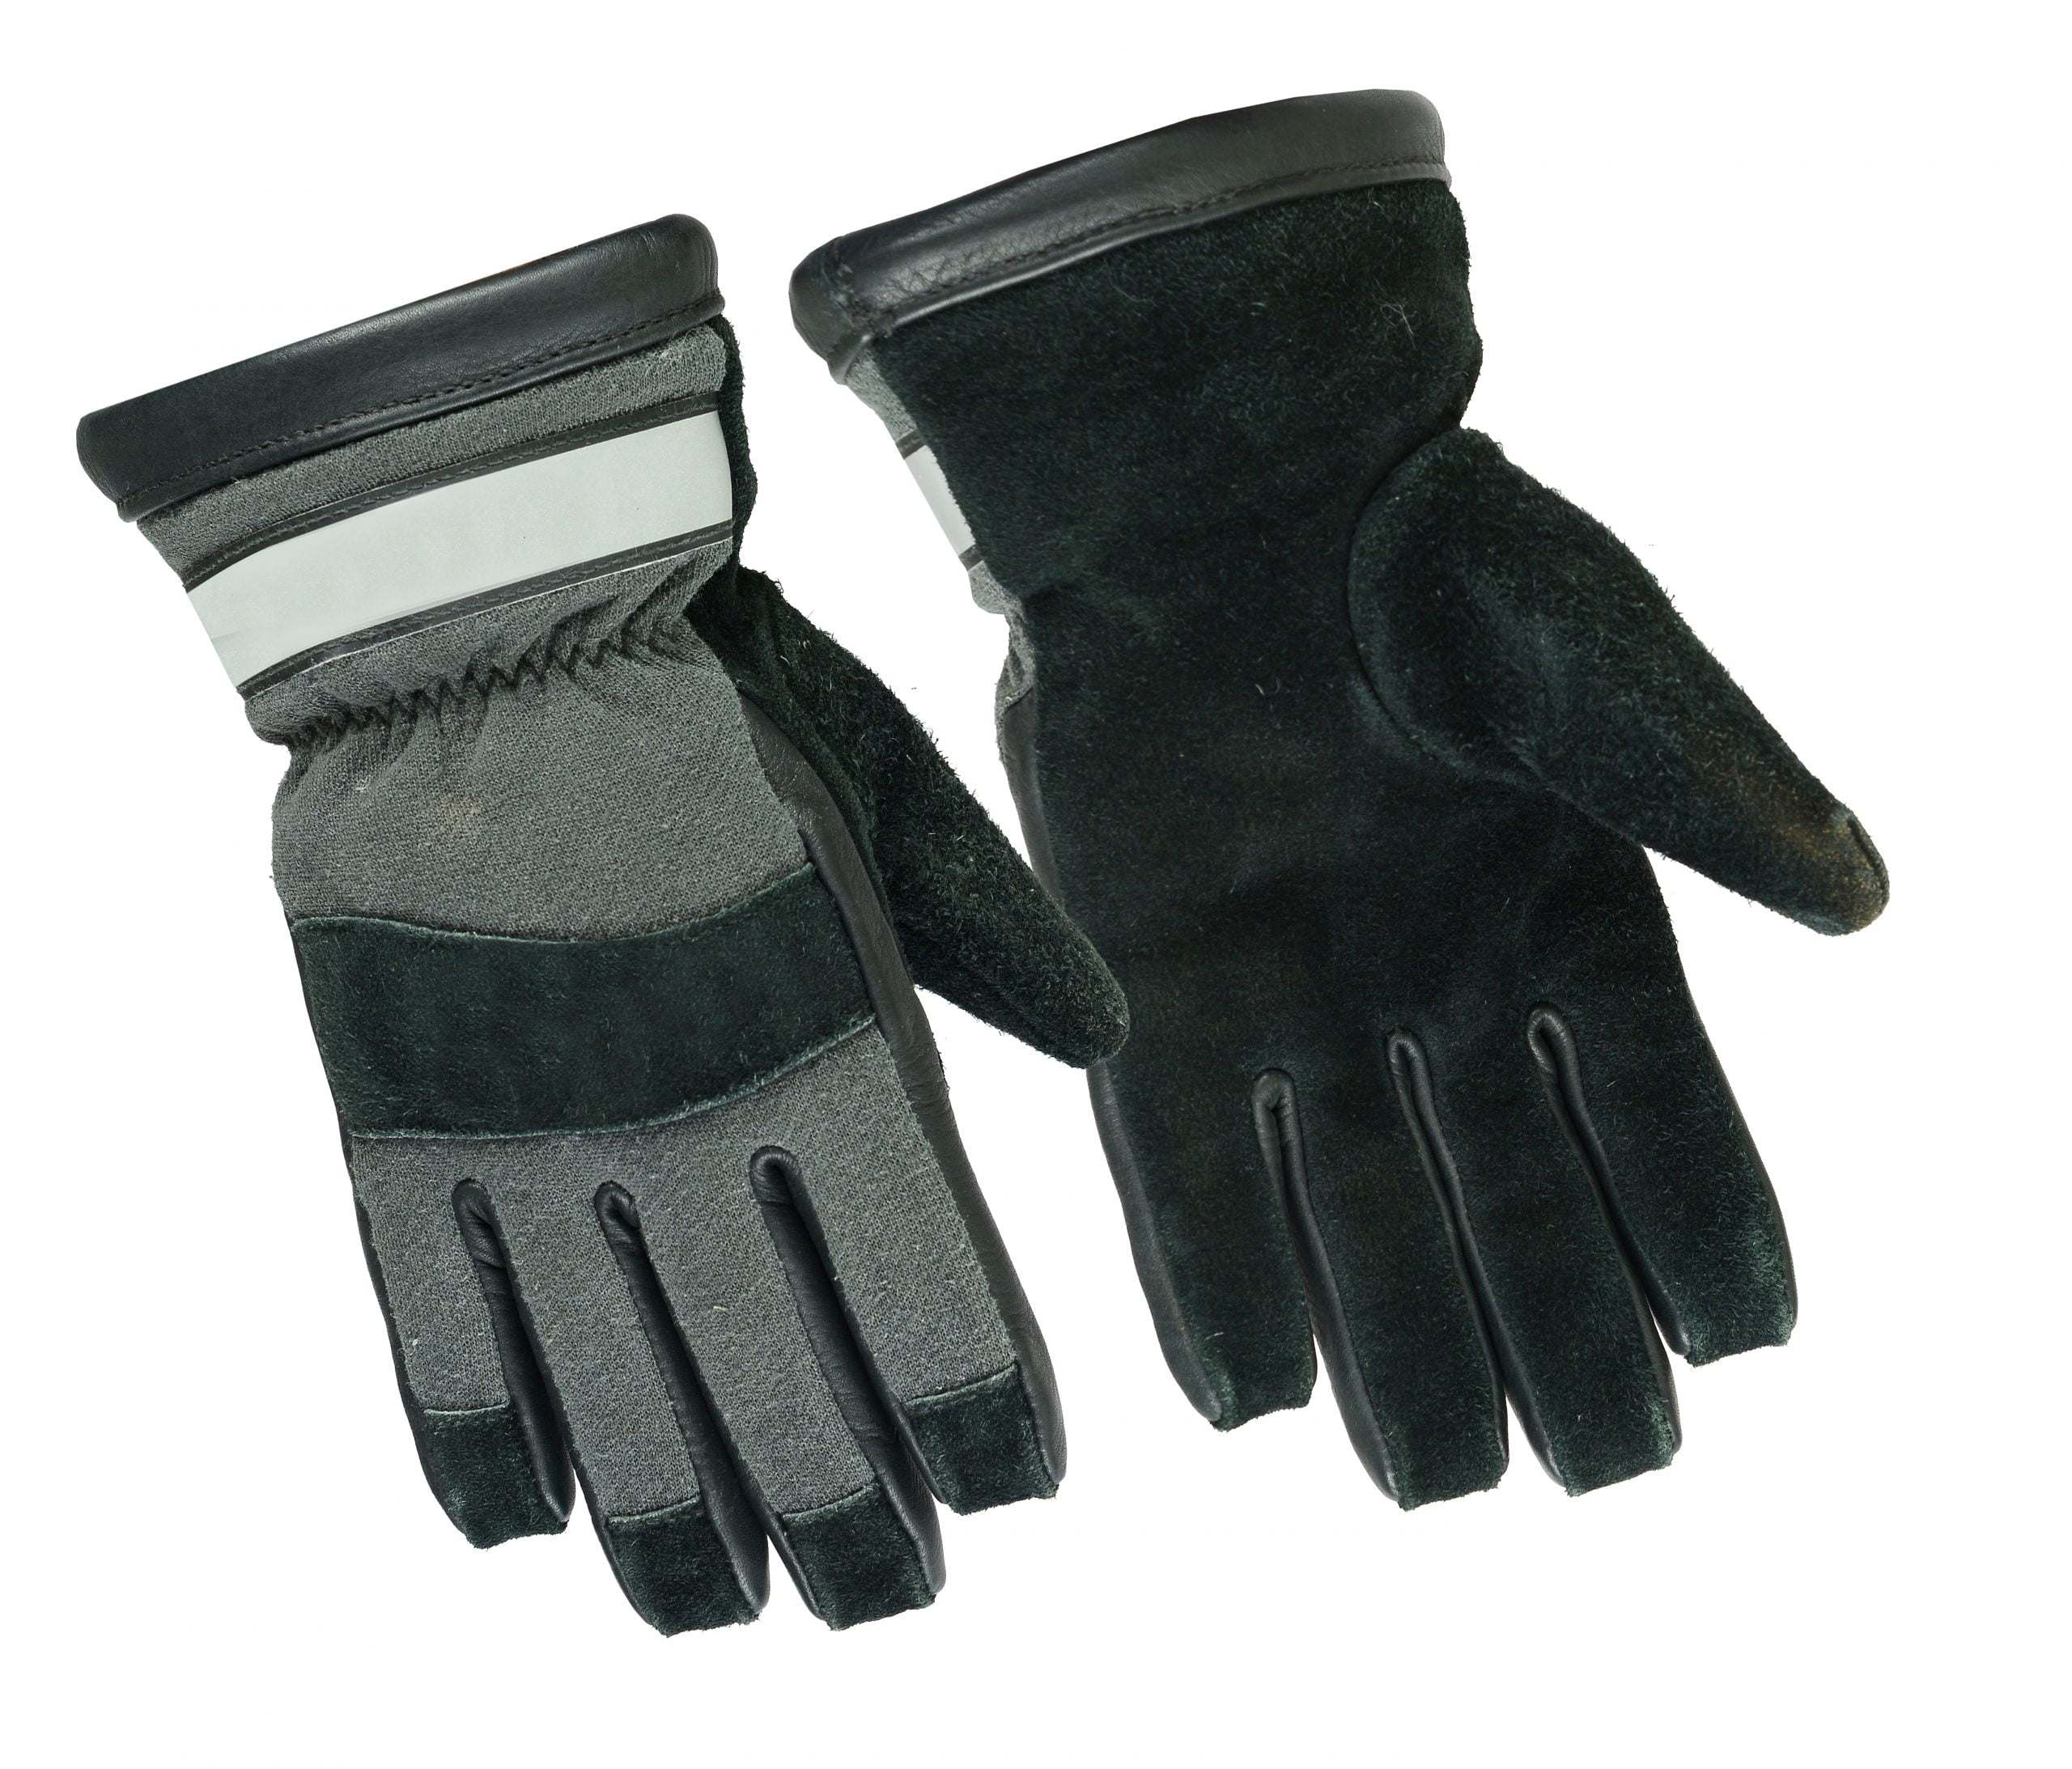 Small Extrication glove; Kevlar; fire rescue glove; gloves Ergodyne ProFlex 726 Fire & Rescue Standard Work Gloves